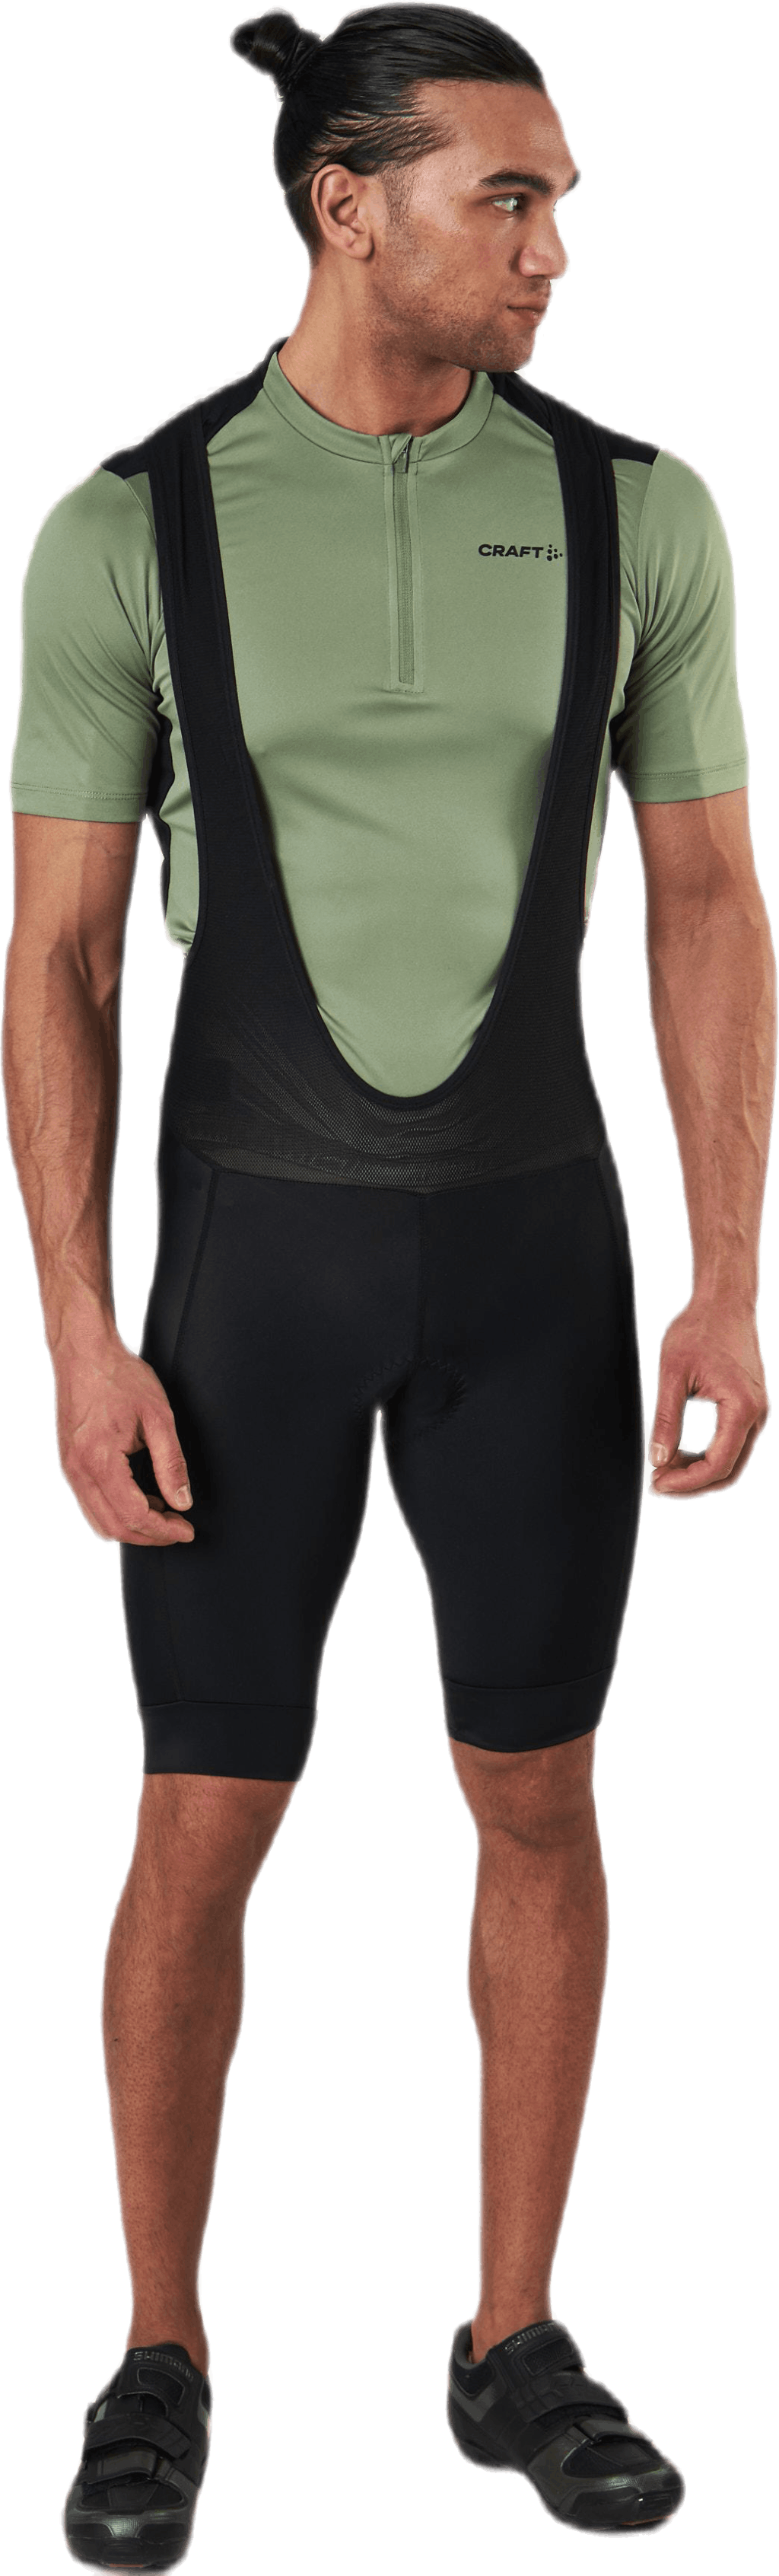 Core Endurance Bib Shorts Black